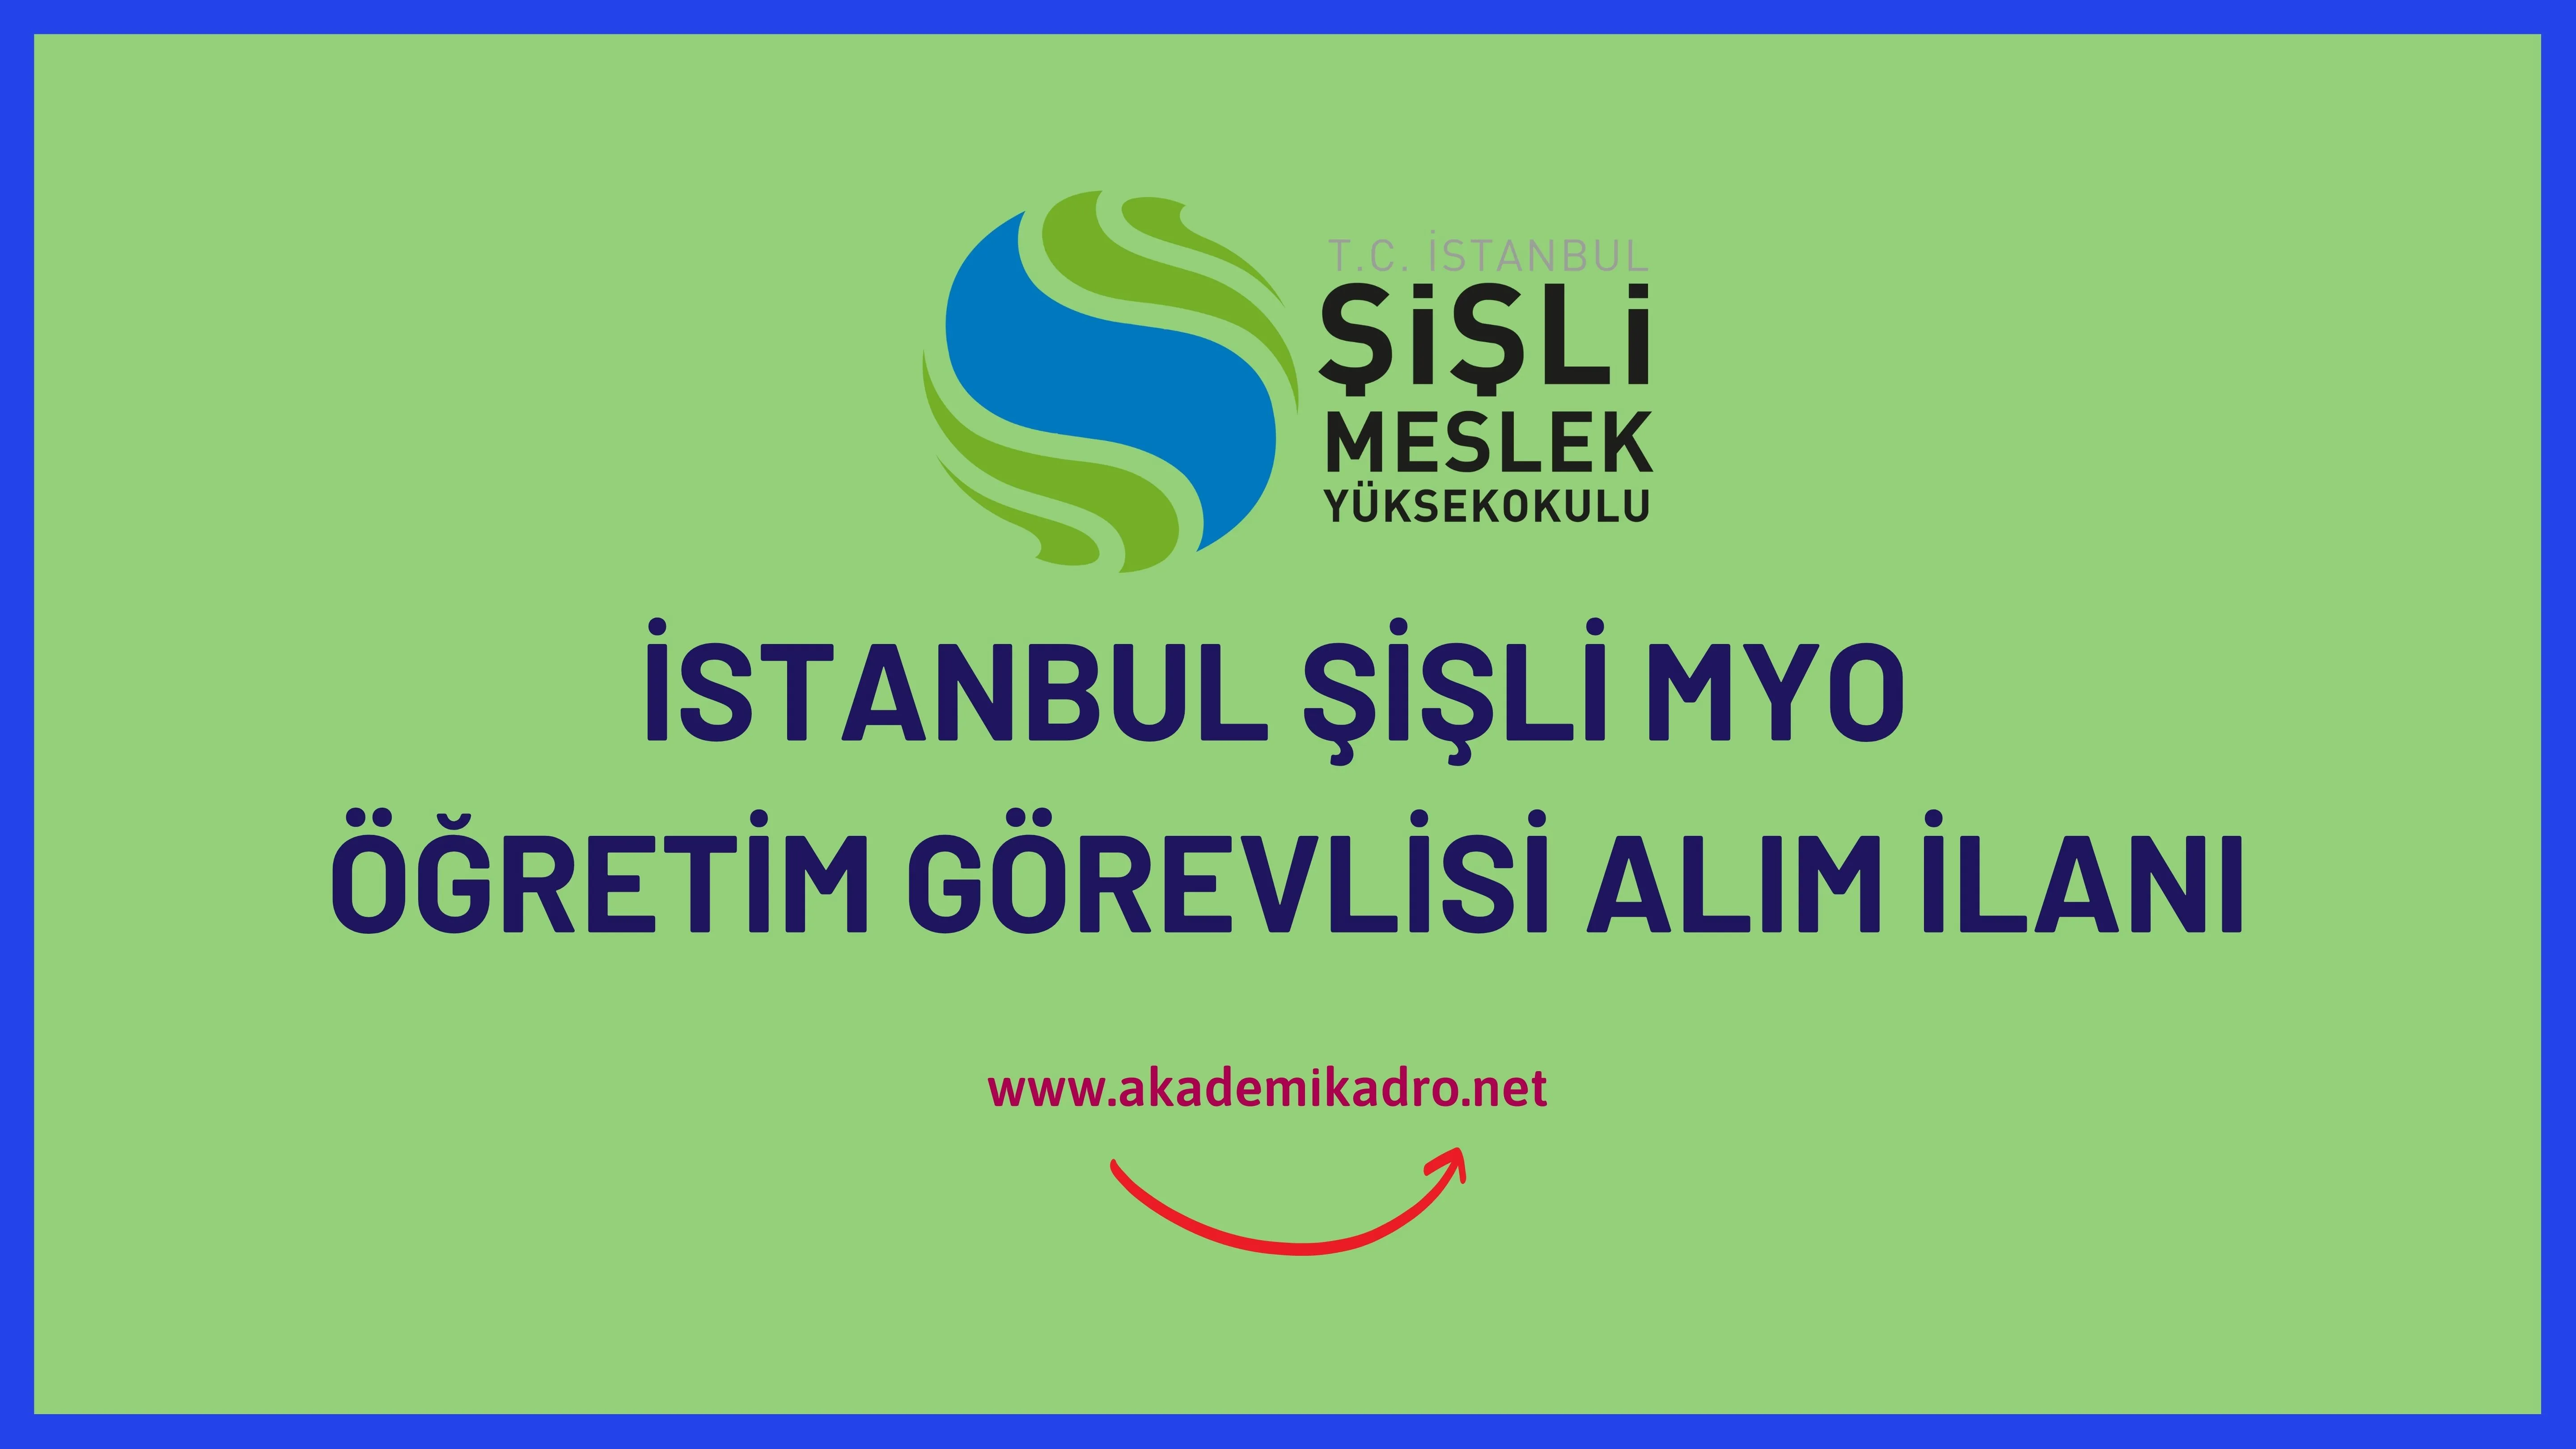 İstanbul Şişli Meslek Yüksekokulu çeşitli branşlarda 5 Öğretim görevlisi alacak. 